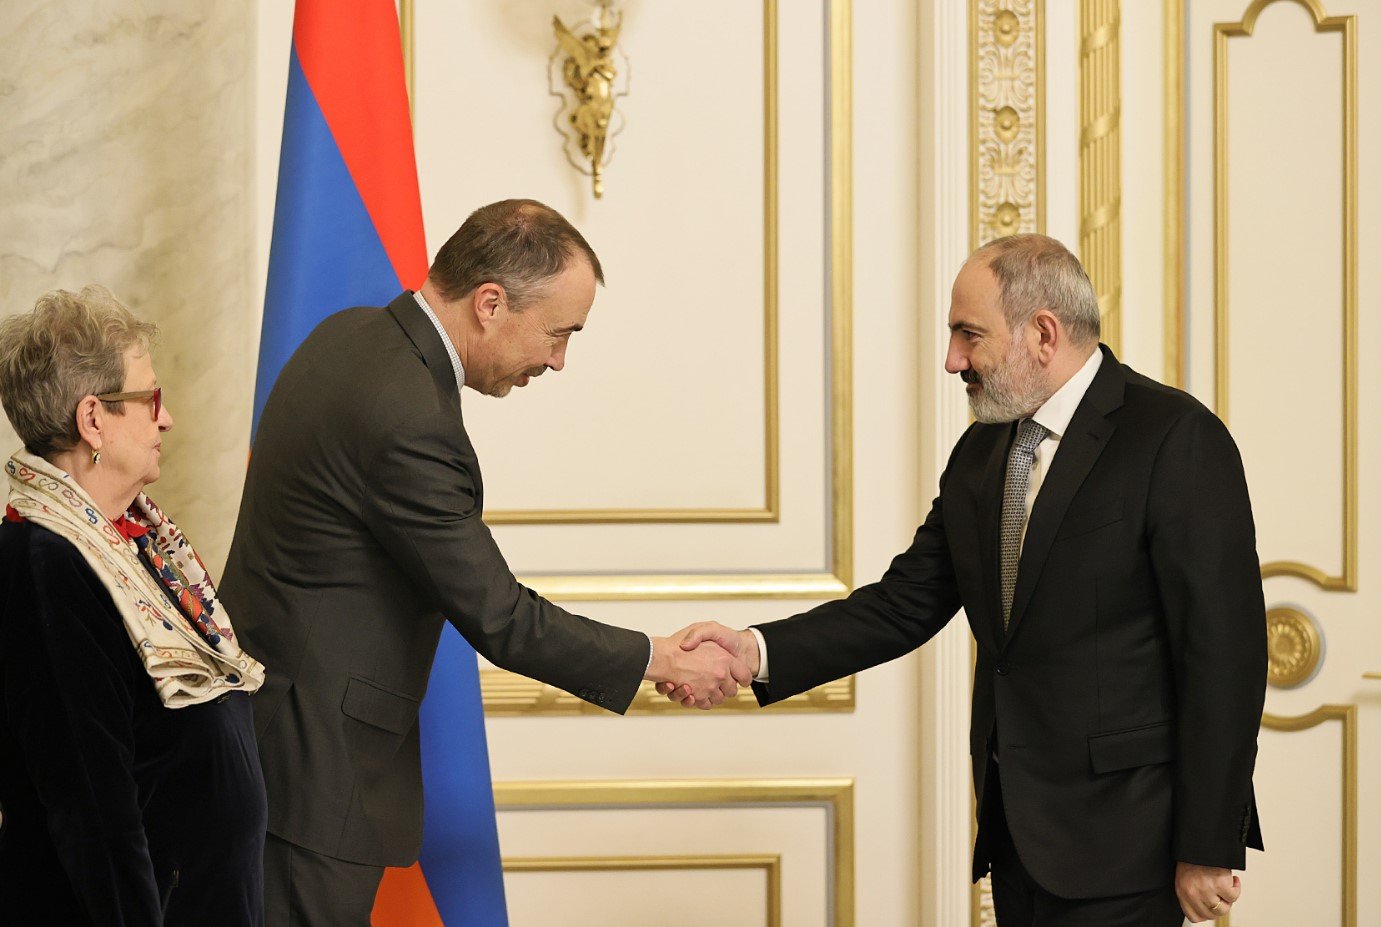 Փաշինյանն ու Կլաարը քննարկել են Հայաստան-Եվրոպական միություն համագործակցությանը վերաբերող հարցեր